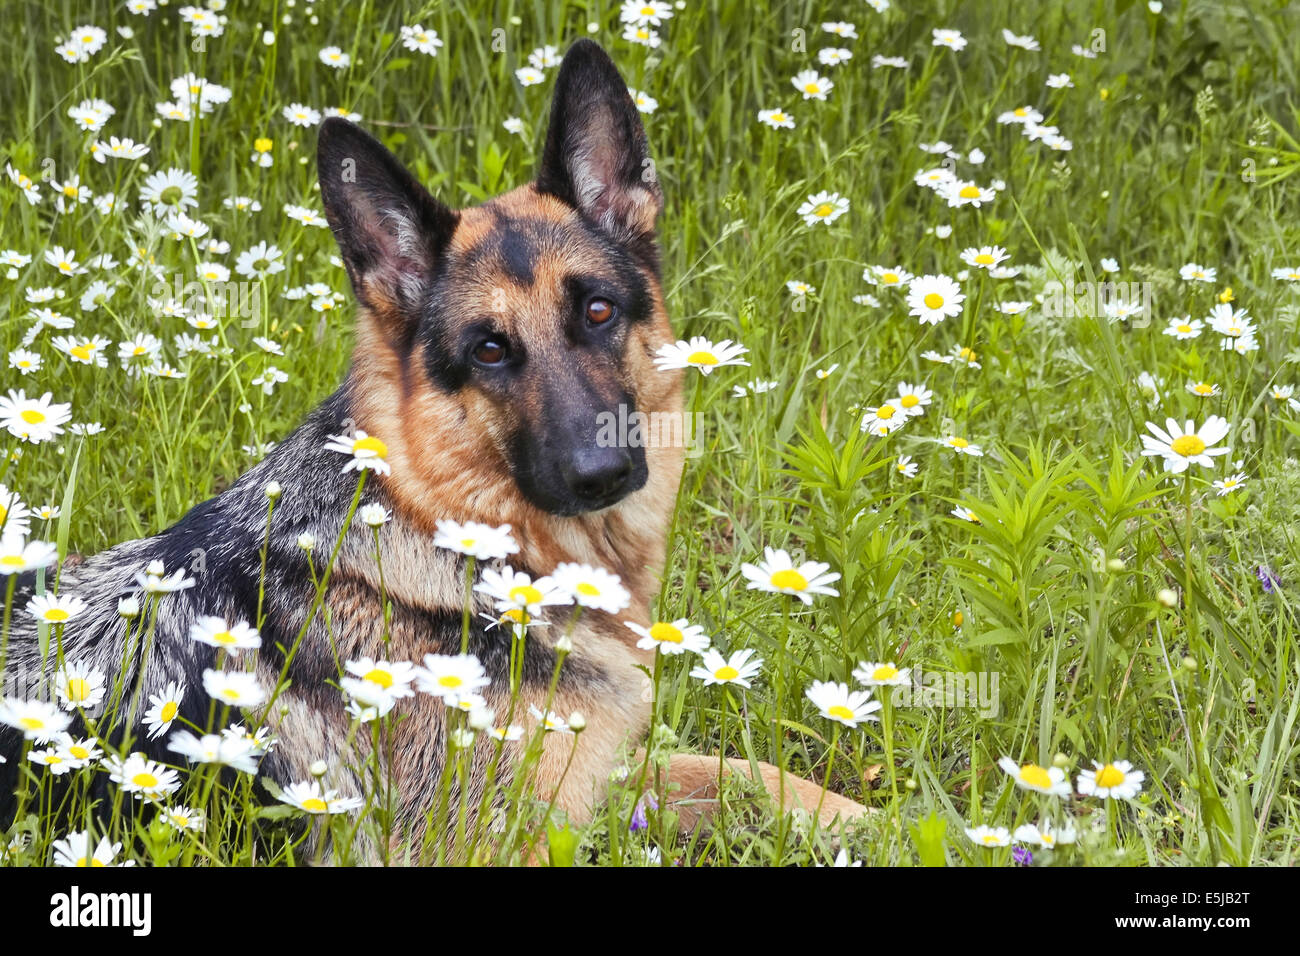 Hund, Deutscher Schäferhund liegt auf einer Lichtung in einem grünen Rasen und Blumen, in weißen Margeriten, Kamillen Stockfoto